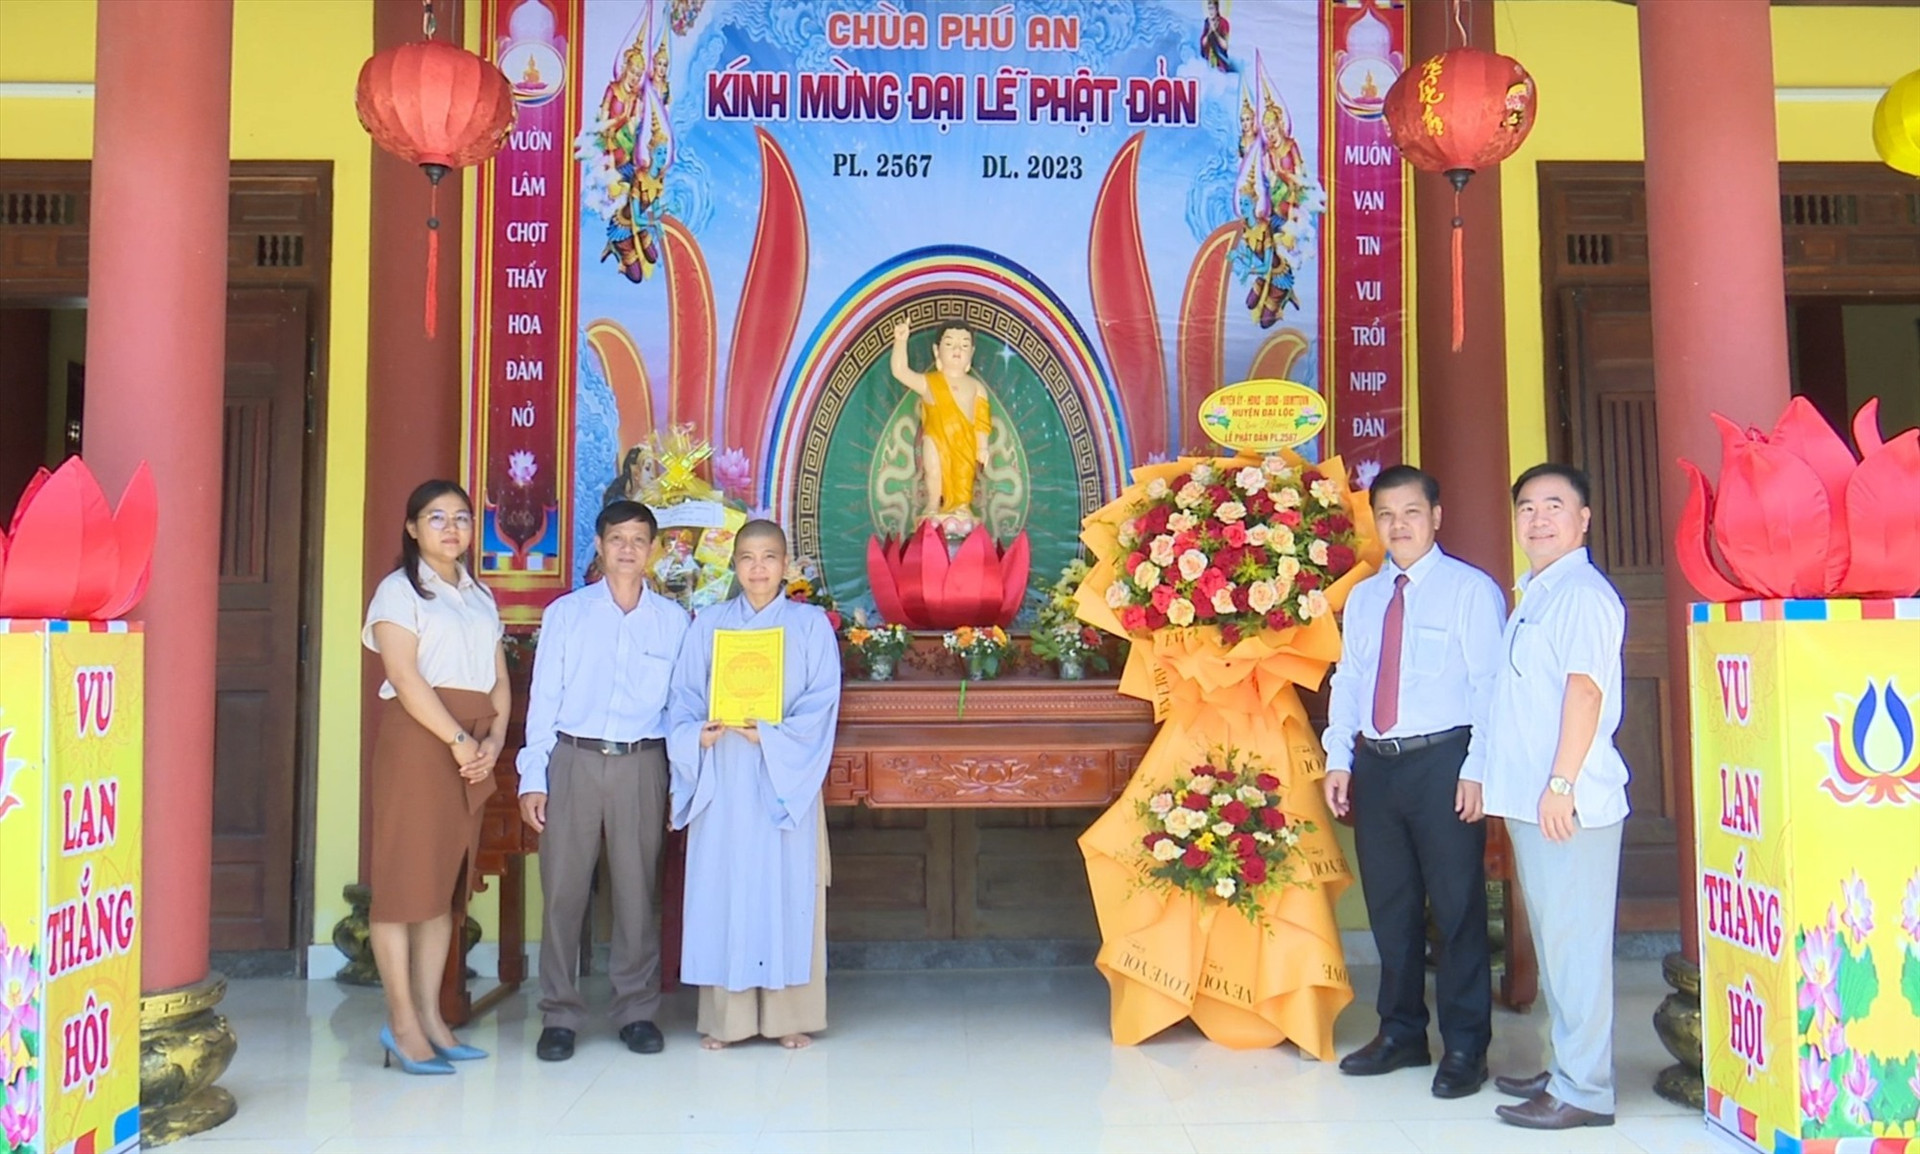 Lãnh đạo huyện thăm các chùa nhân ngày lễ Phật đản. Ảnh: N.D